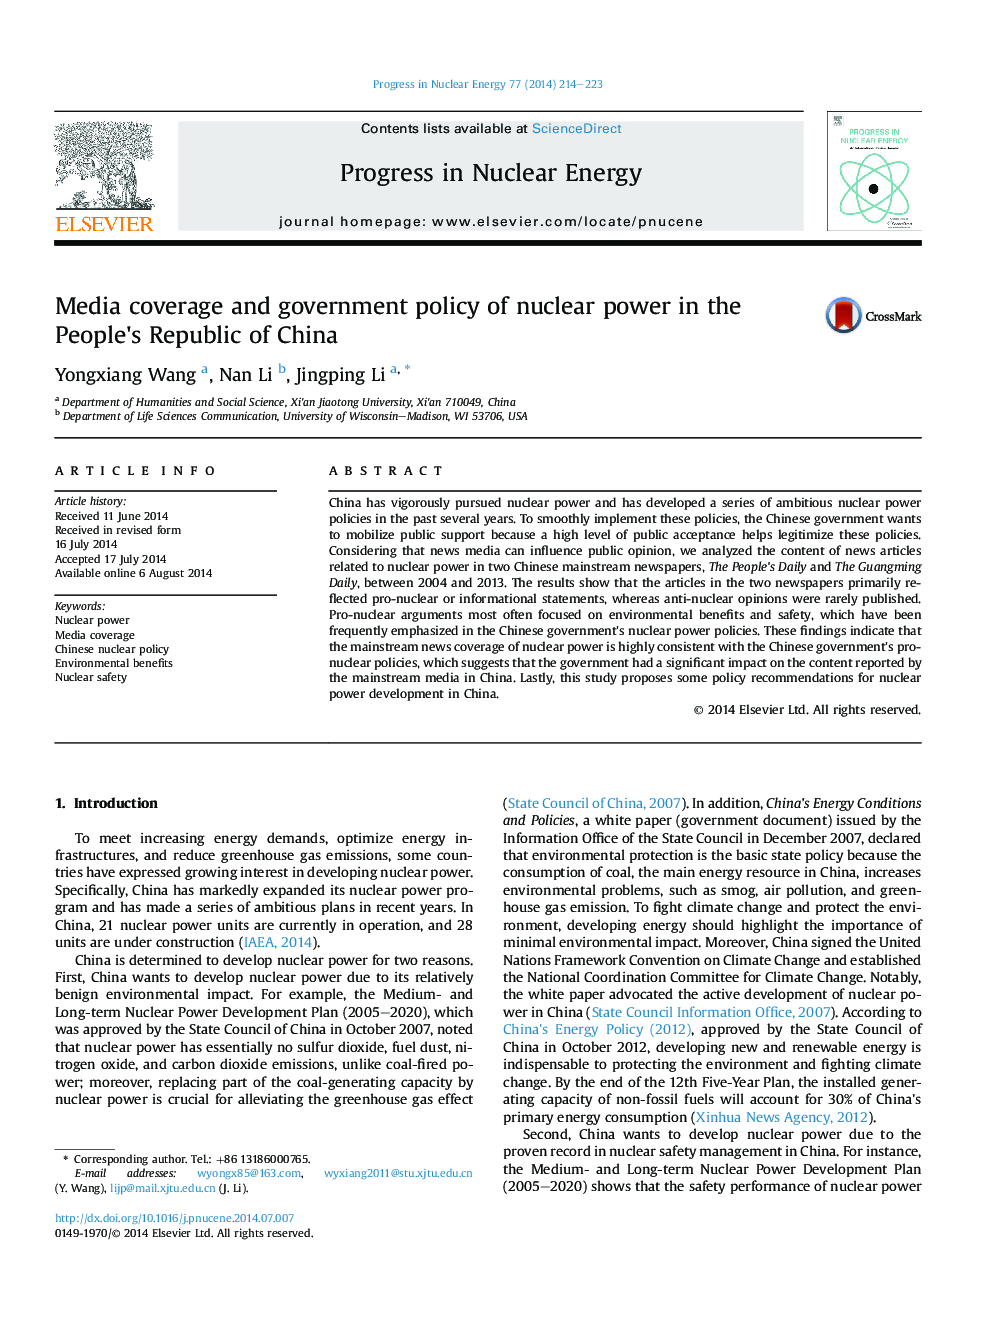 پوشش رسانه ها و سیاست دولتی انرژی هسته ای در جمهوری خلق چین 